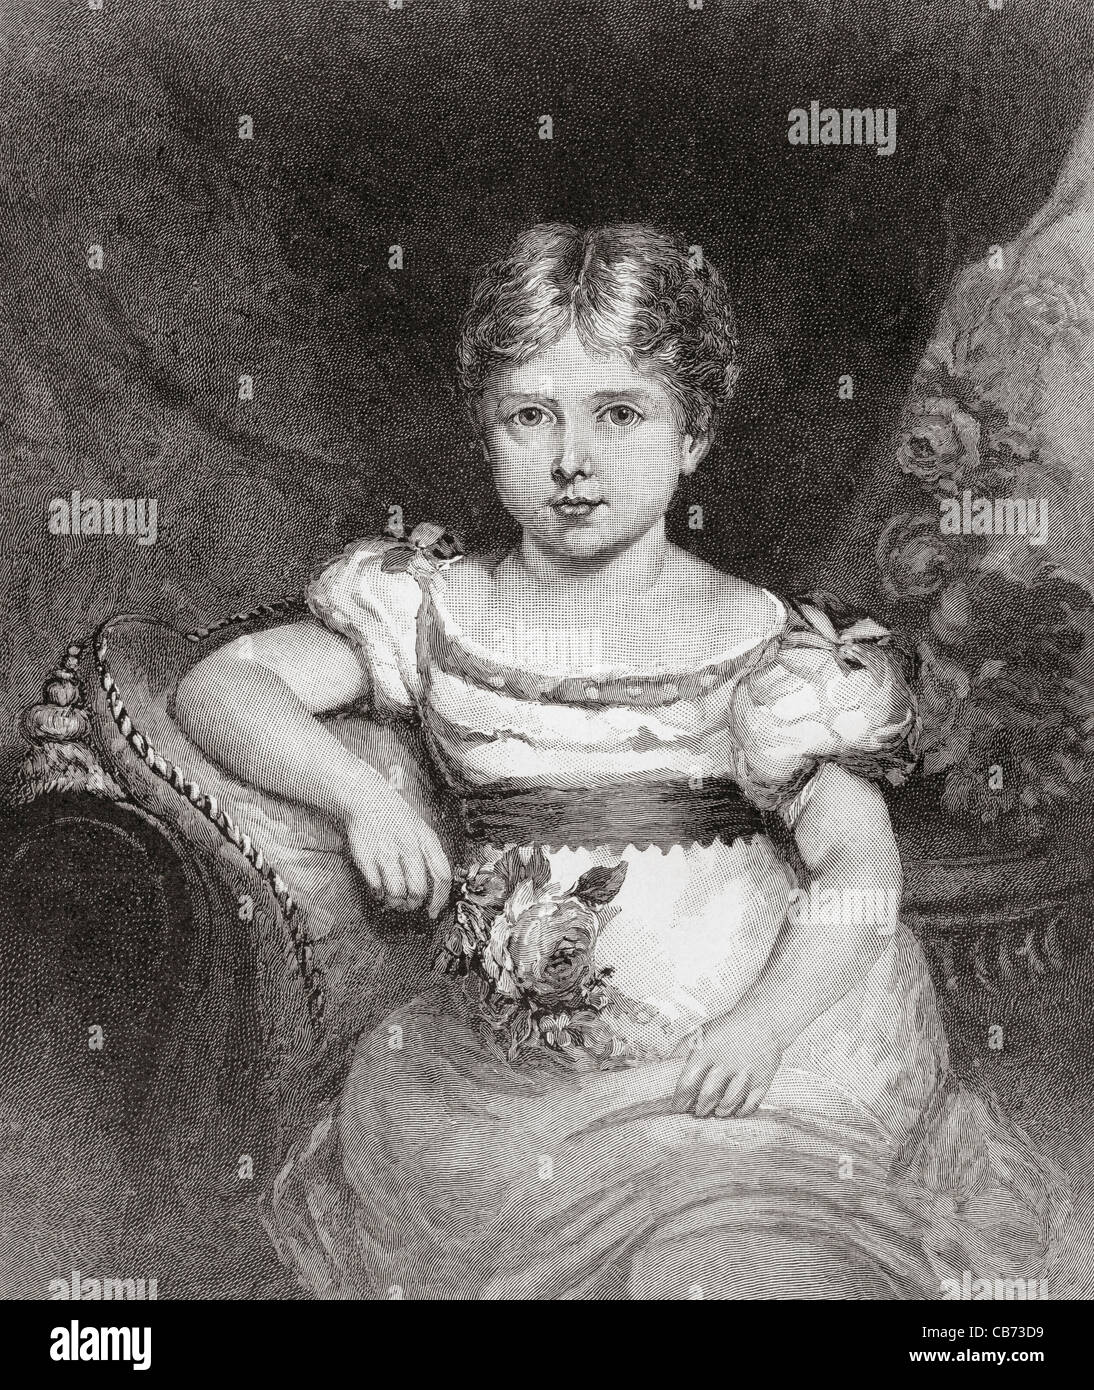 Königin Victoria, im Alter von 6, 1819-1901. Königin von Großbritannien und Irland sowie Kaiserin von Indien. Stockfoto